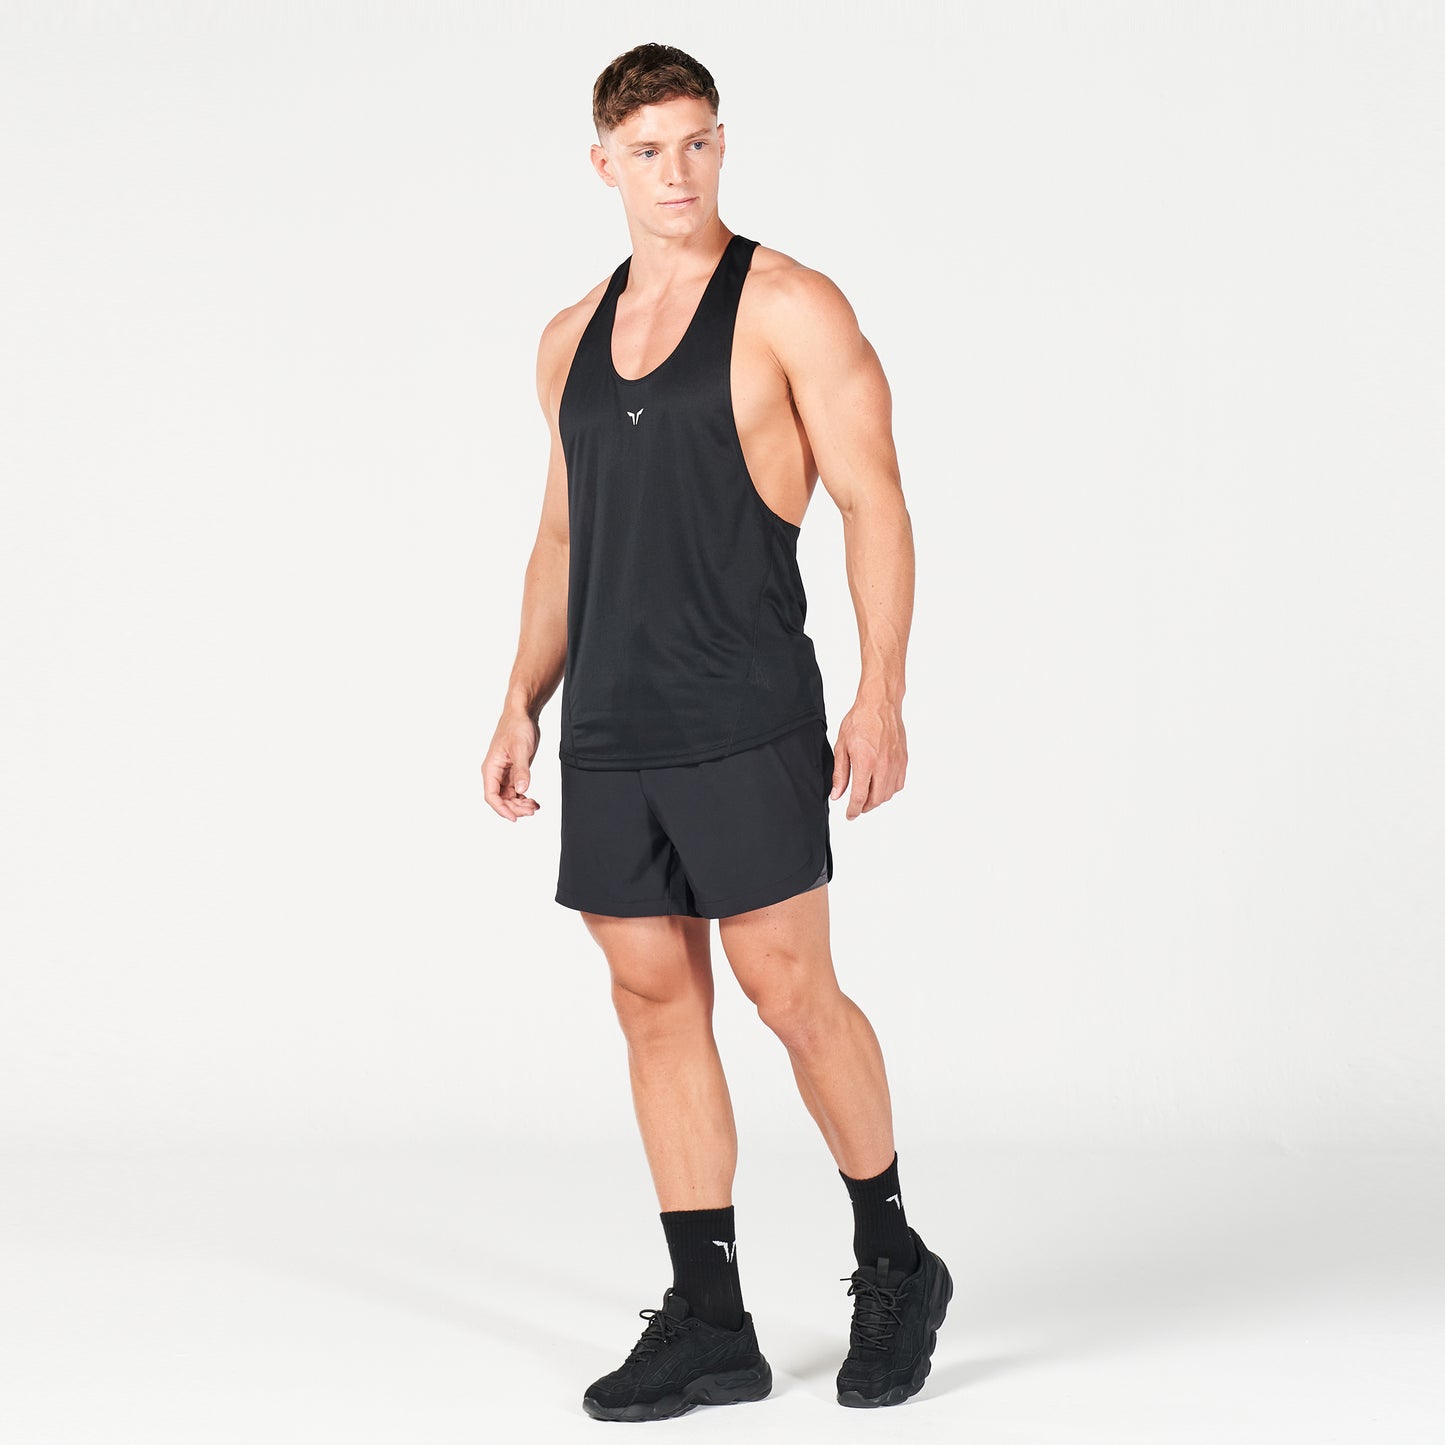 squatwolf-gym-wear-next-gen-hypercool-stringer-black-stringer-vests-for-men